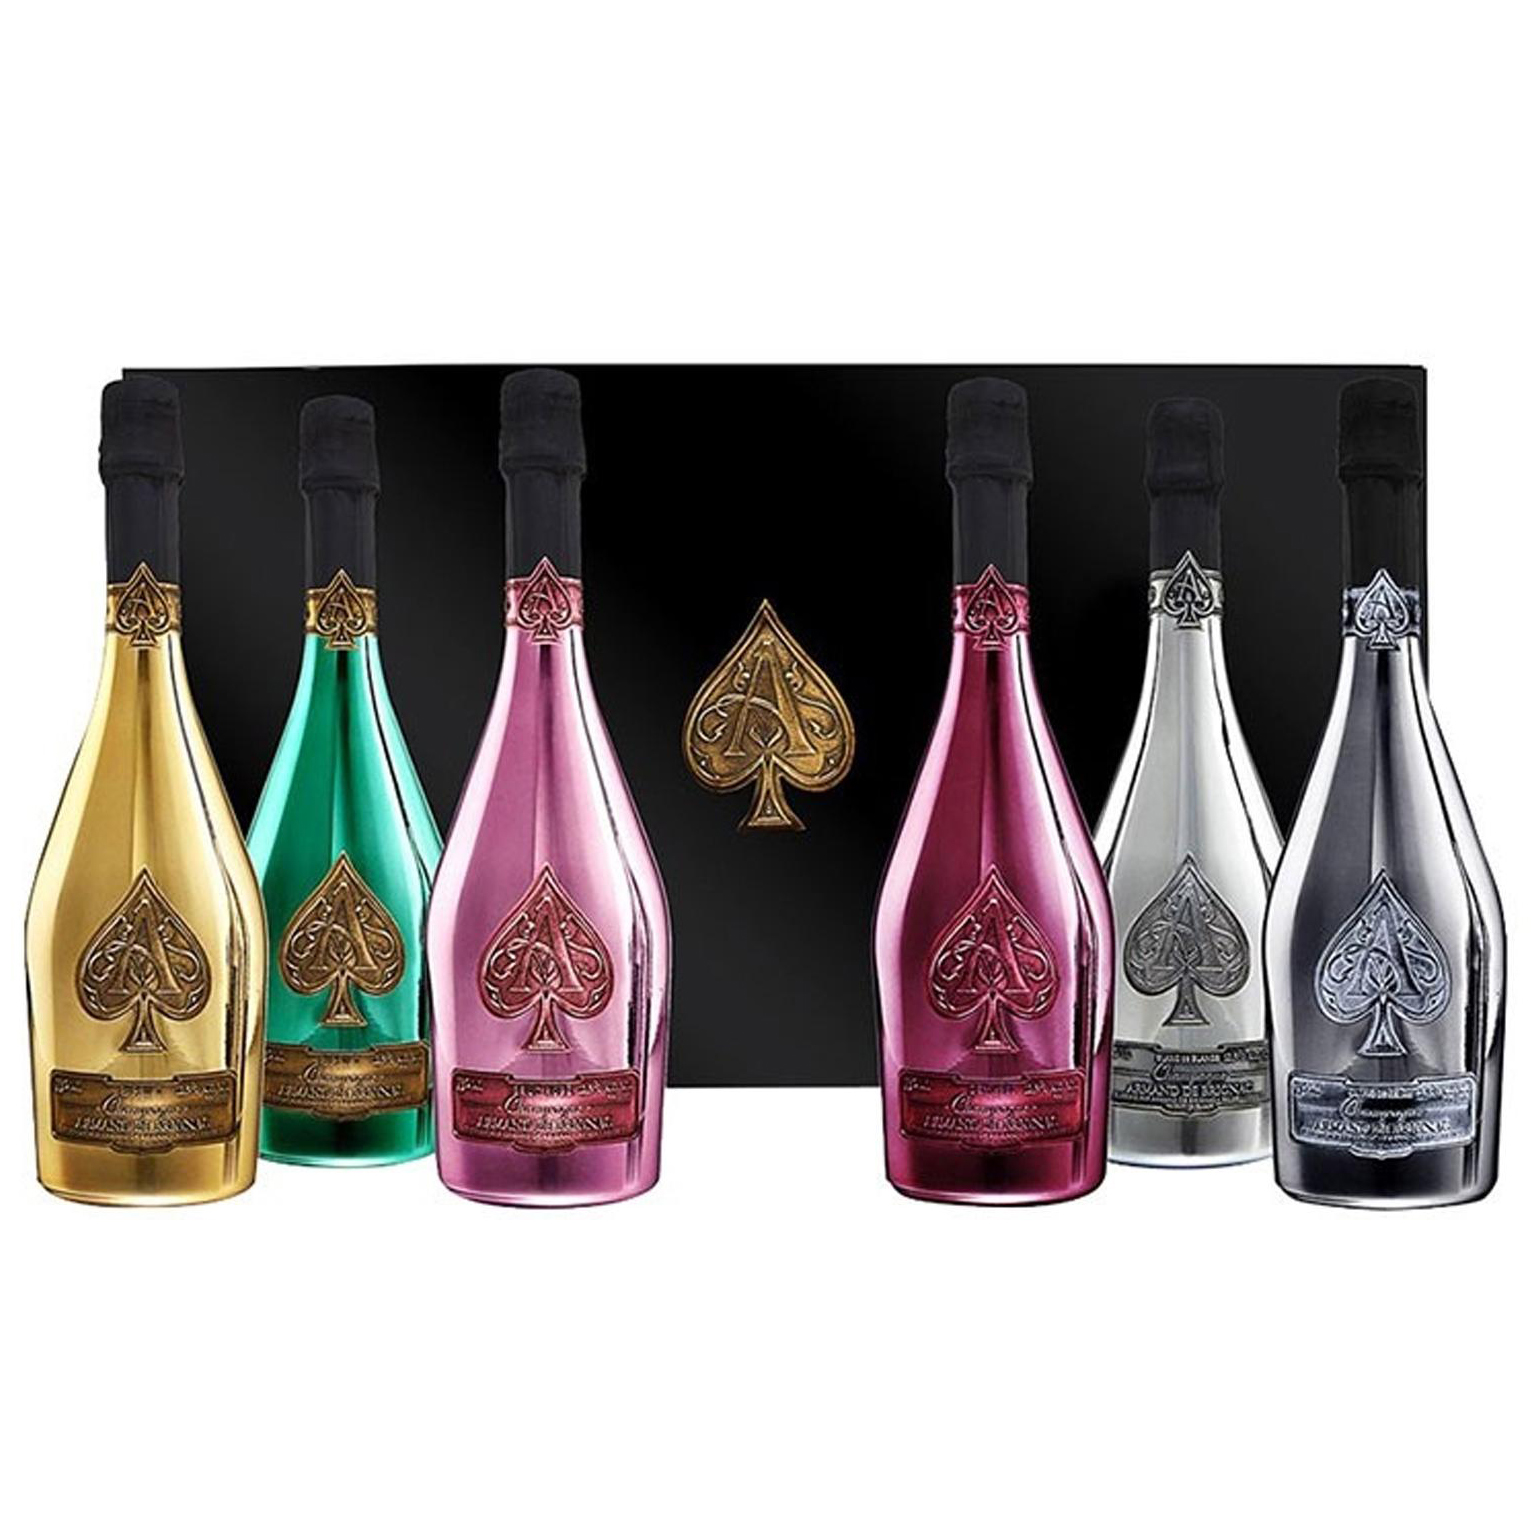 Armand de Brignac Ace of Spades Brut Rose Champagne - Gift Box